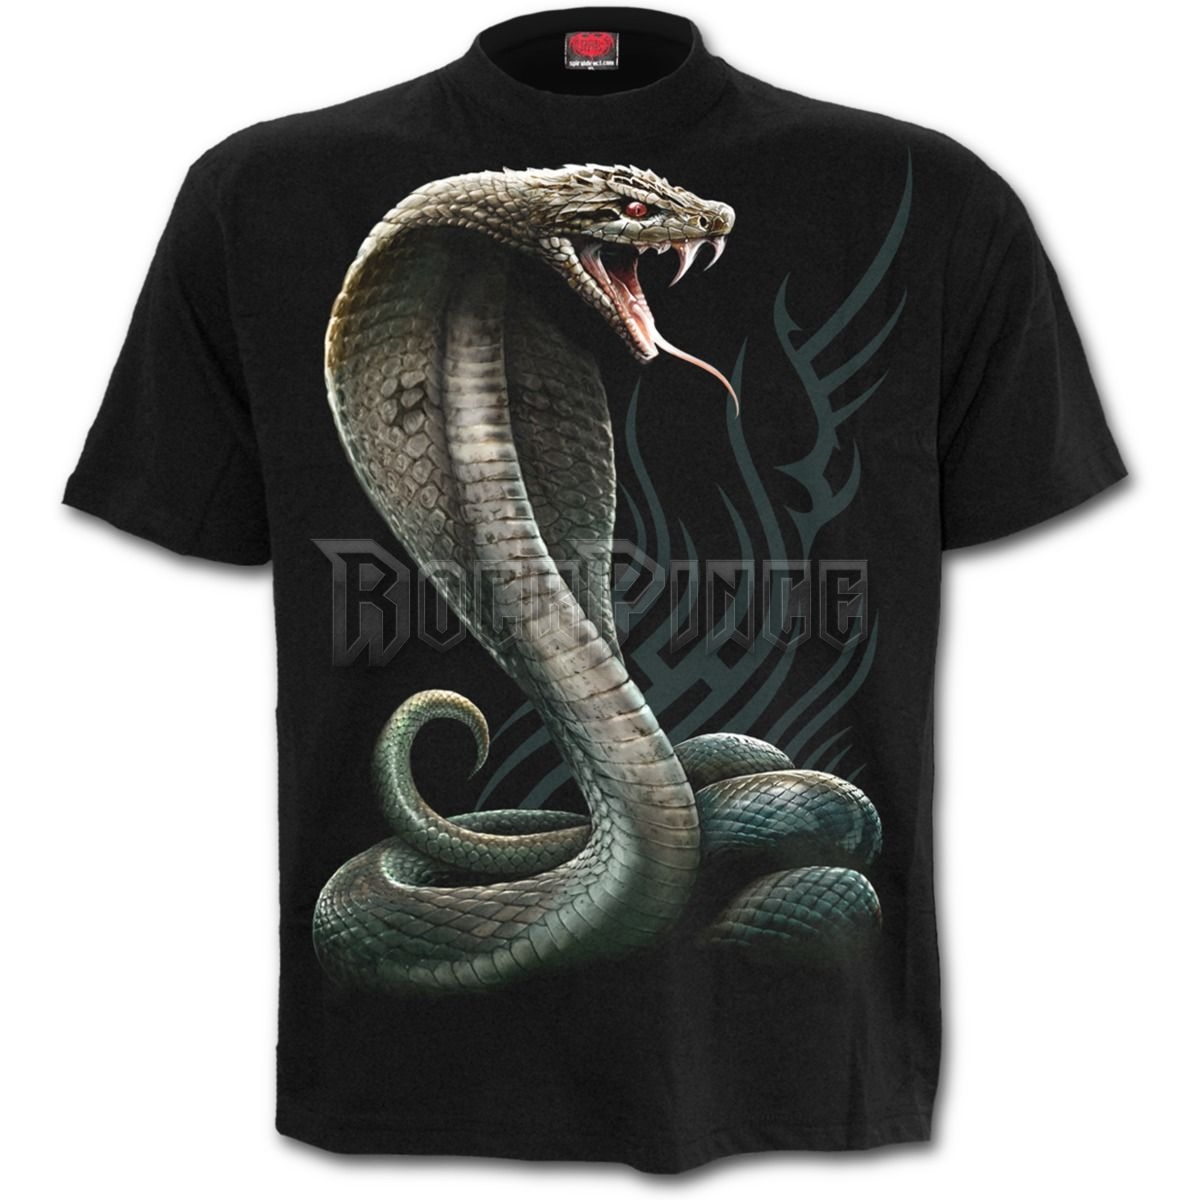 SERPENT TATTOO - Front Print T-Shirt Black - T149M121